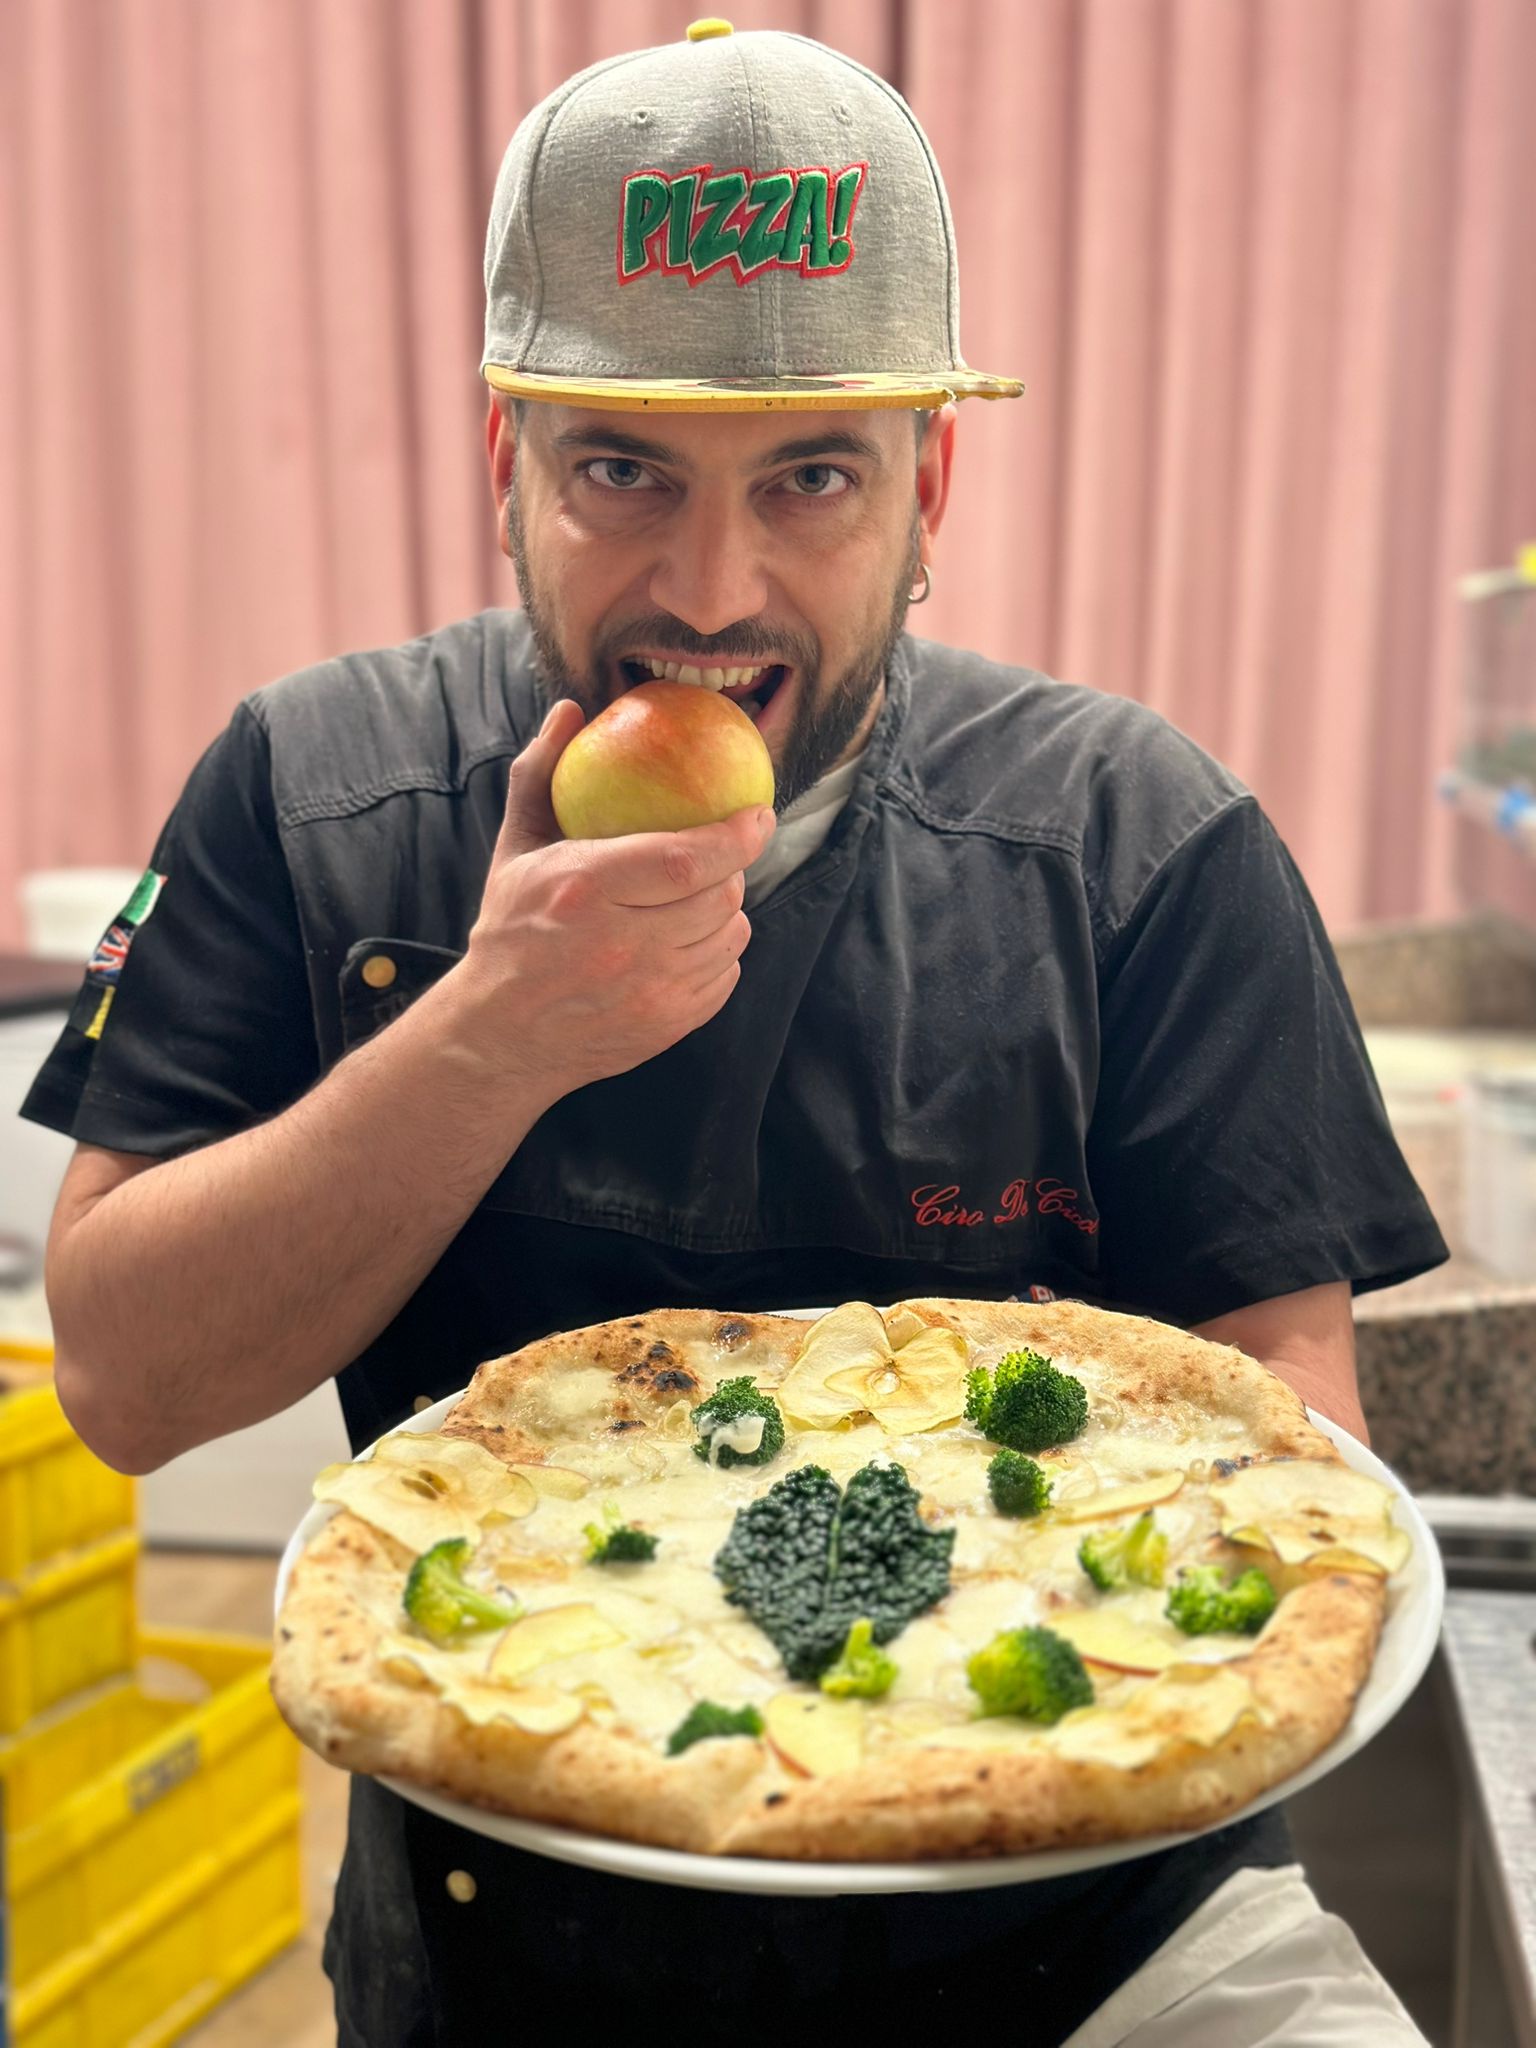 NOLANO. Ciro De Cicco: Il Pizzaiolo sognatore che ha conquistato lEuropa con la sua arte unica. Tra le sue creazioni emerge la Pizza Eva